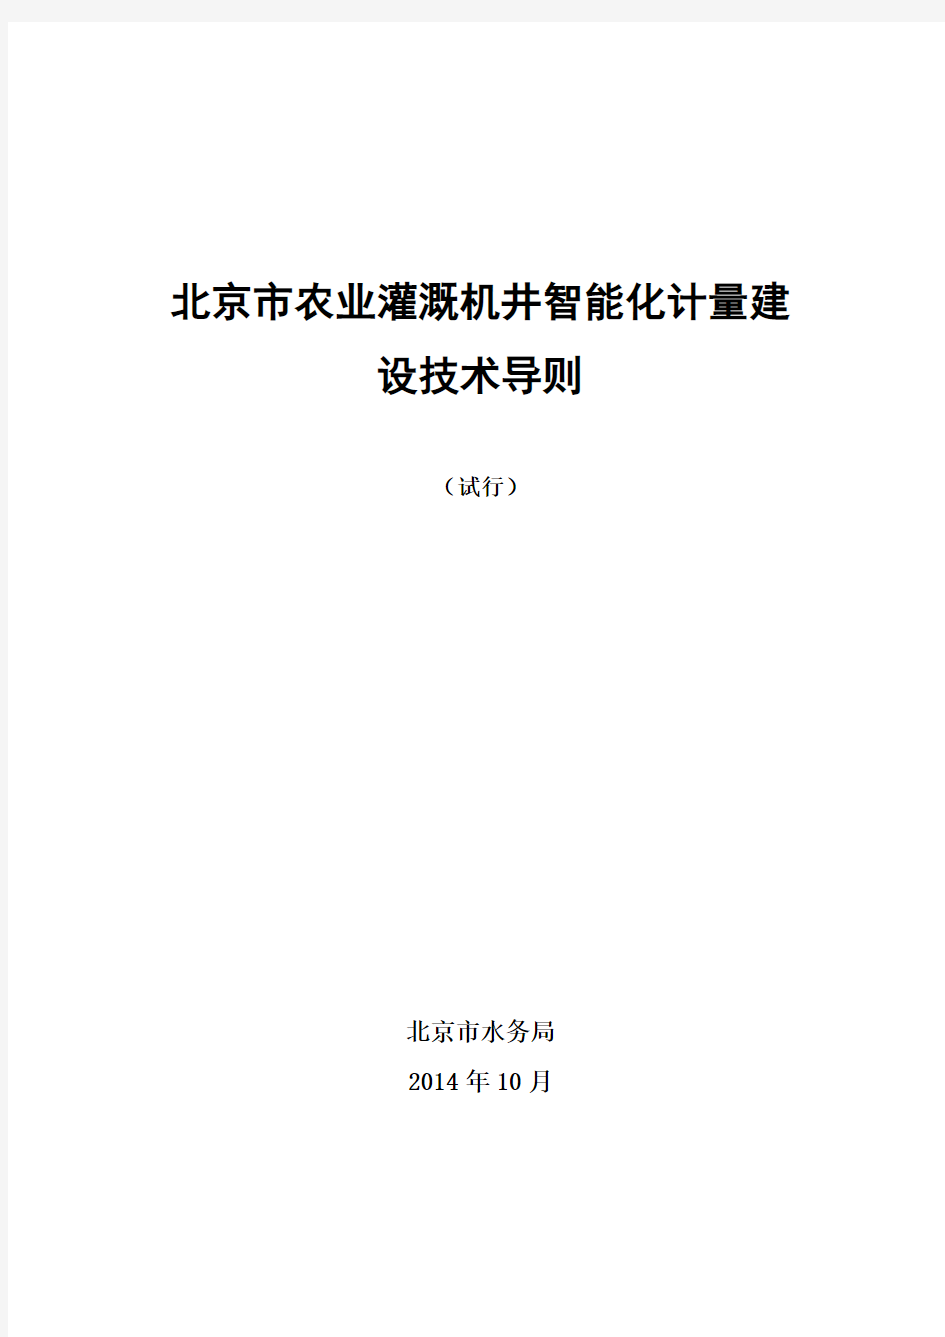 2014年11月6日 北京市农业灌溉机井智能化计量建设技术导则(试行)